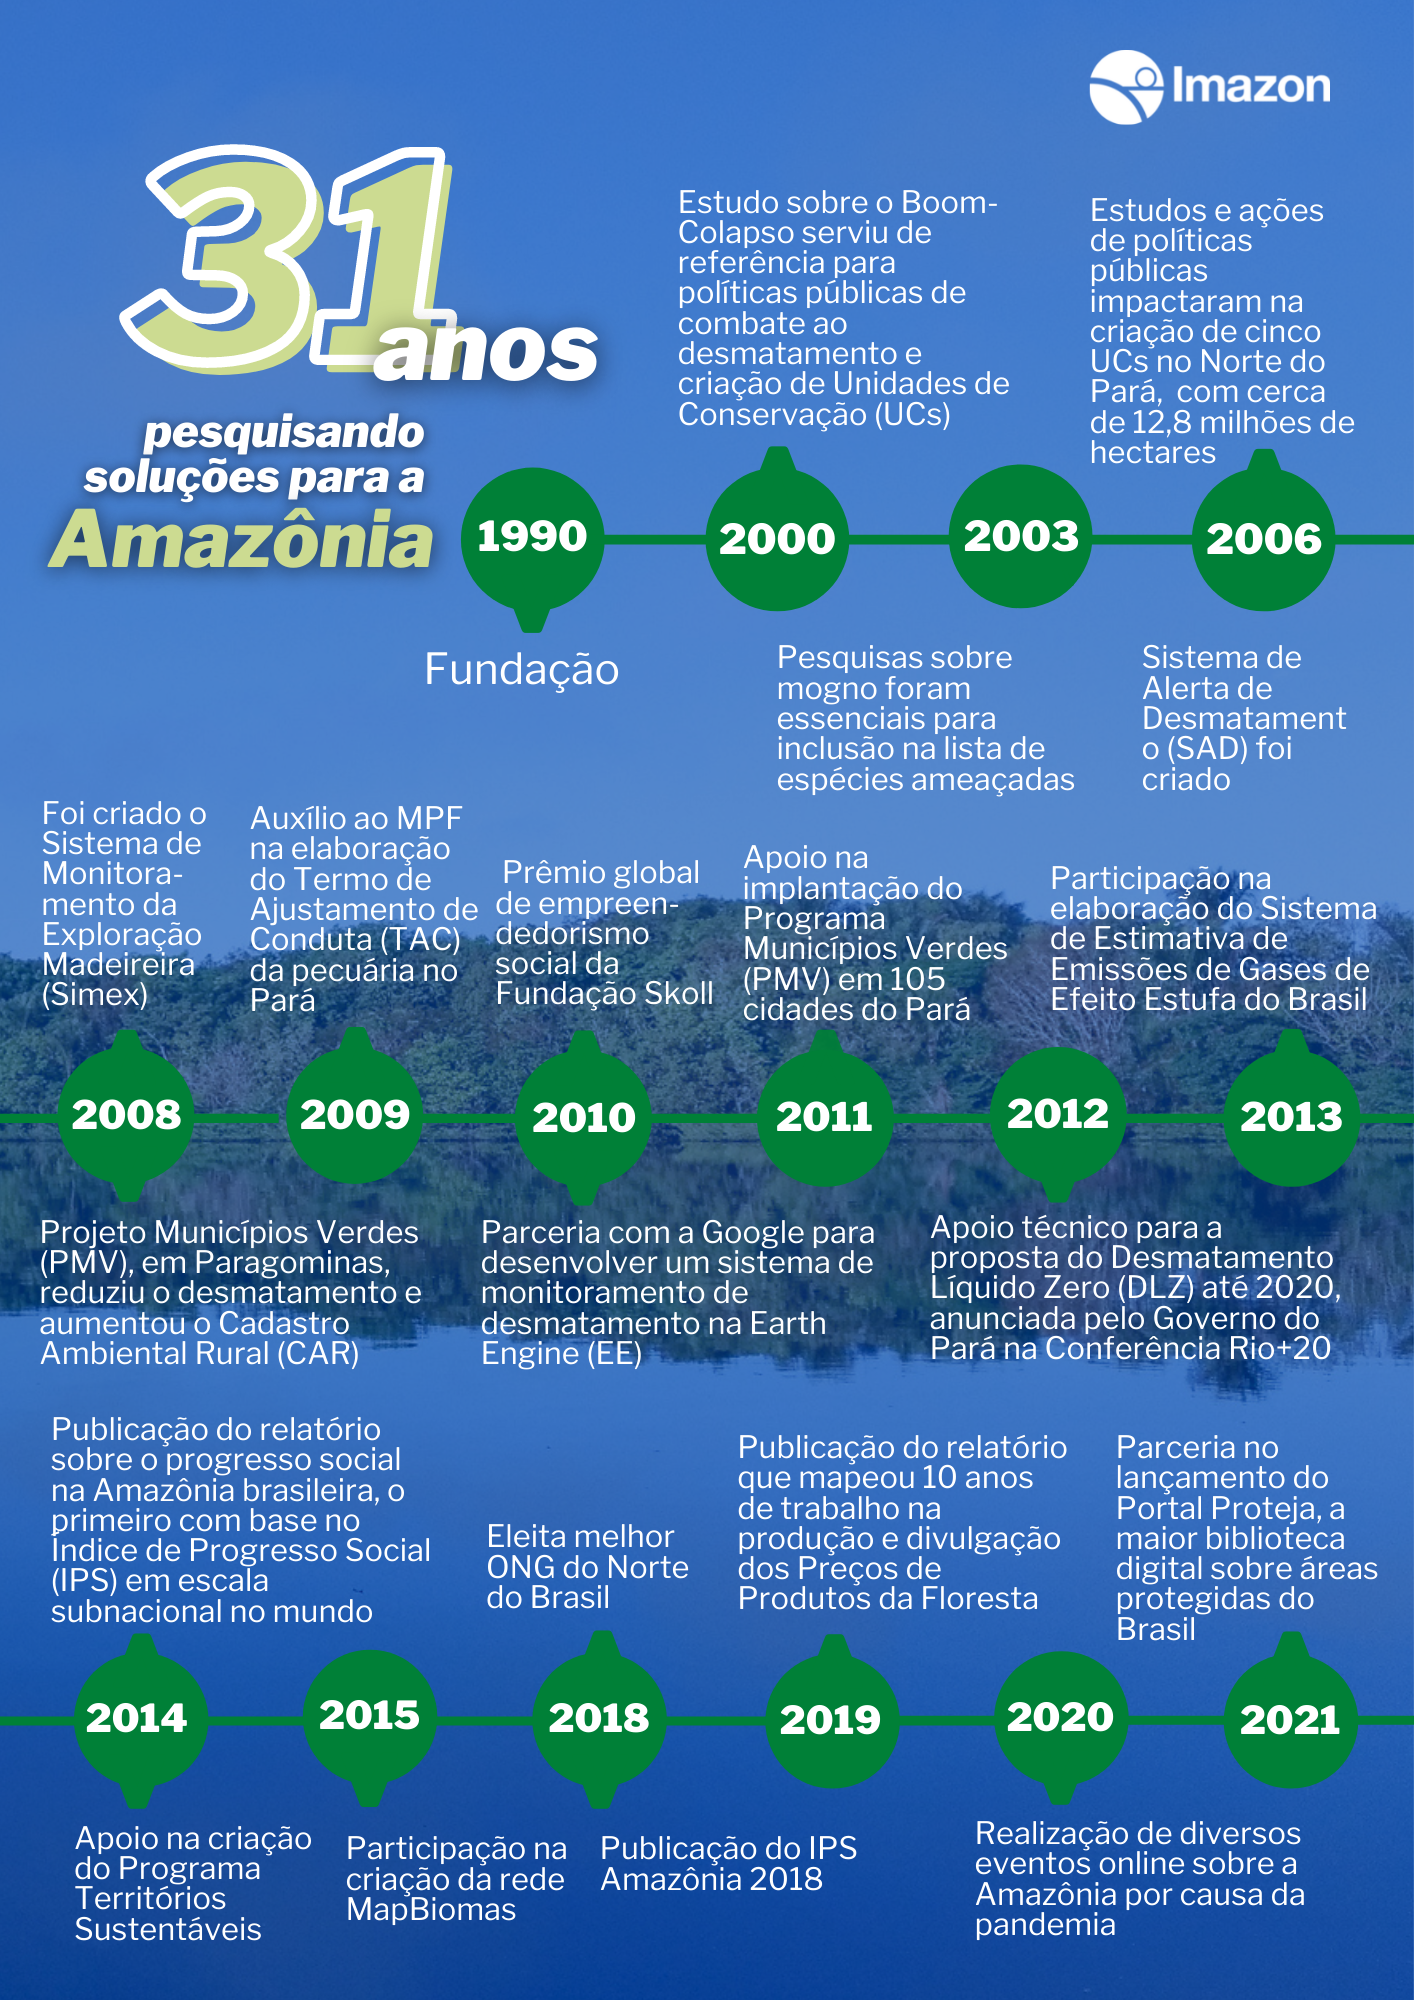 31 anos A4 - Imazon completa 31 anos de pesquisa para o desenvolvimento sustentável da Amazônia